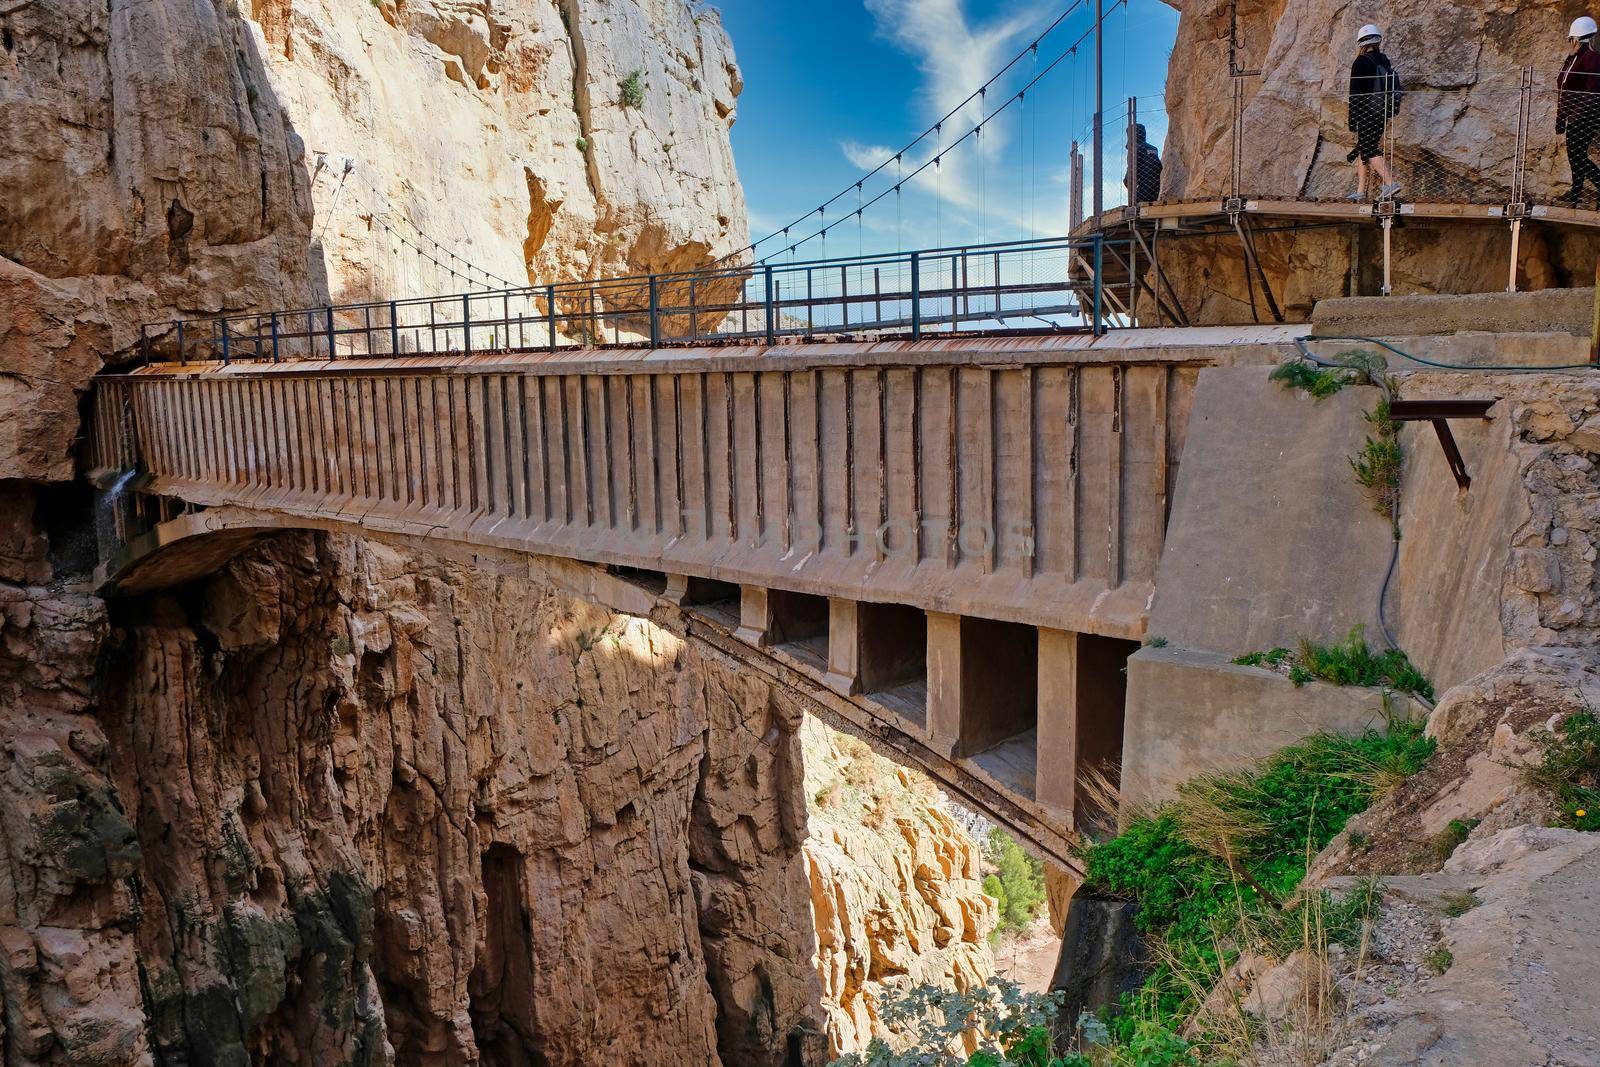 Bridge in the Caminito del Rey gorge in Spain